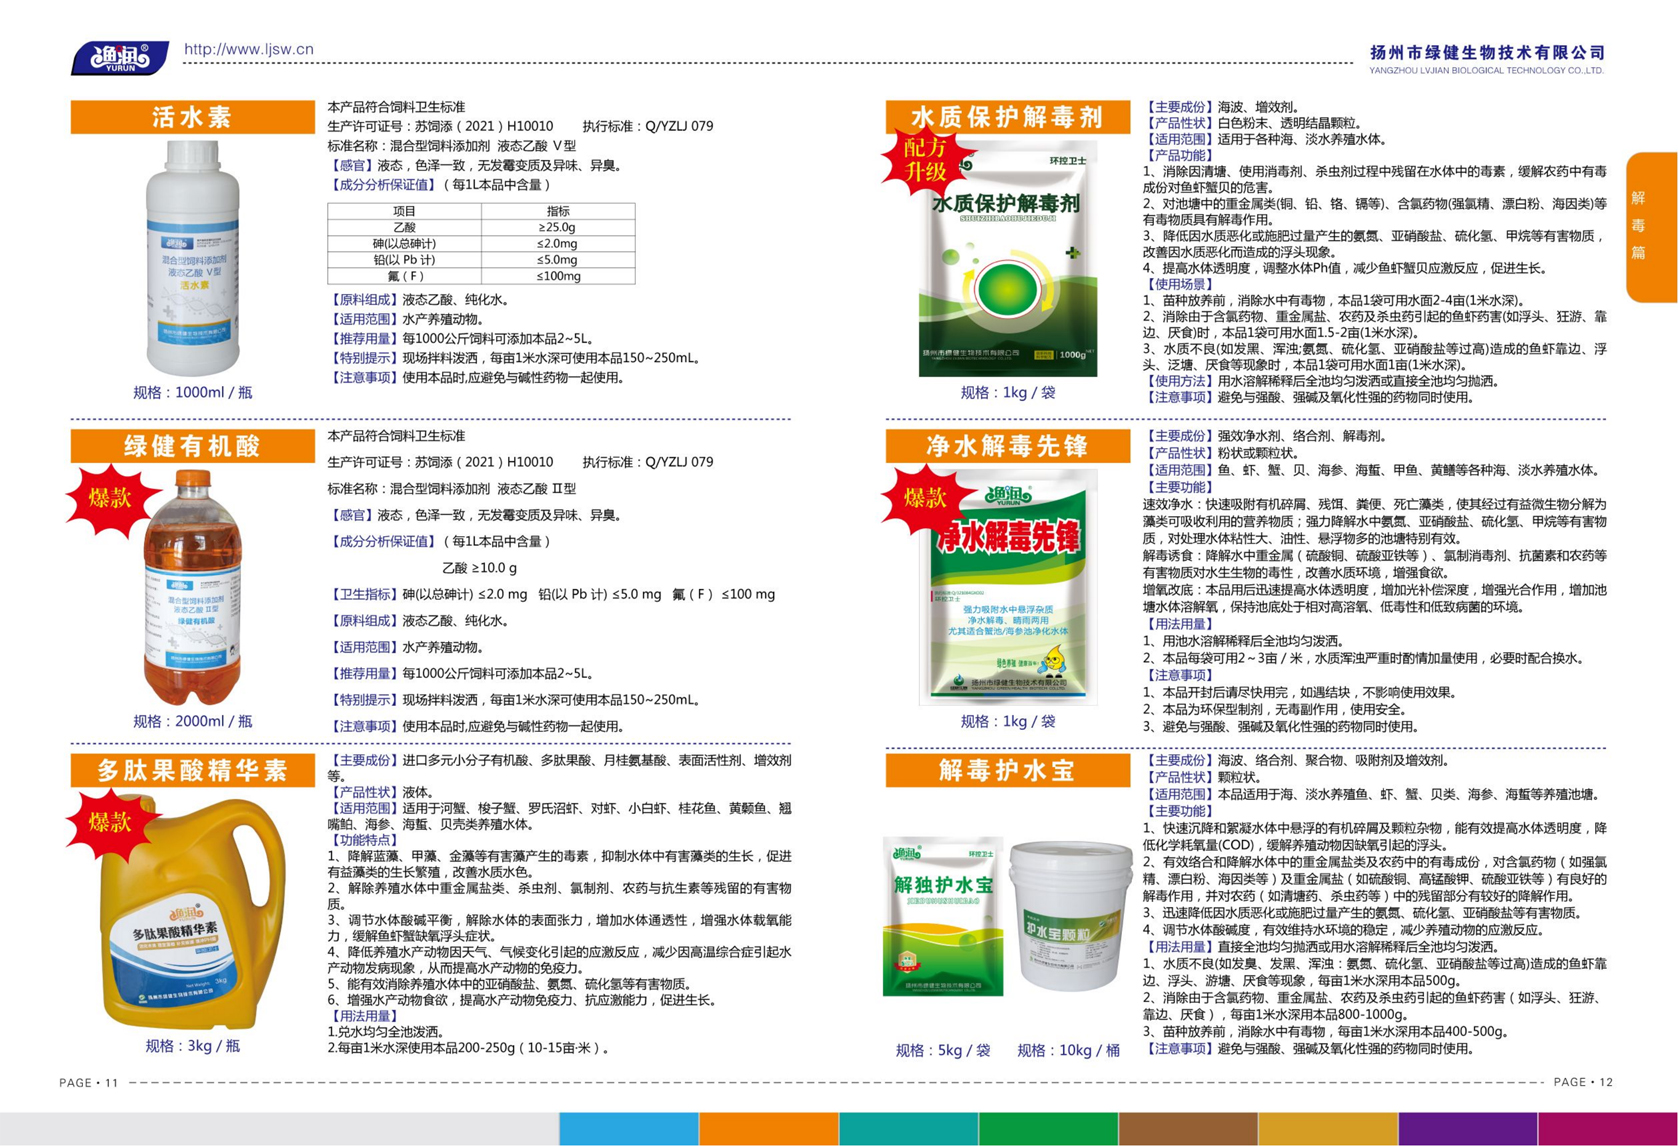 揚州市綠健生物技術有限公司第6版產品手冊_07